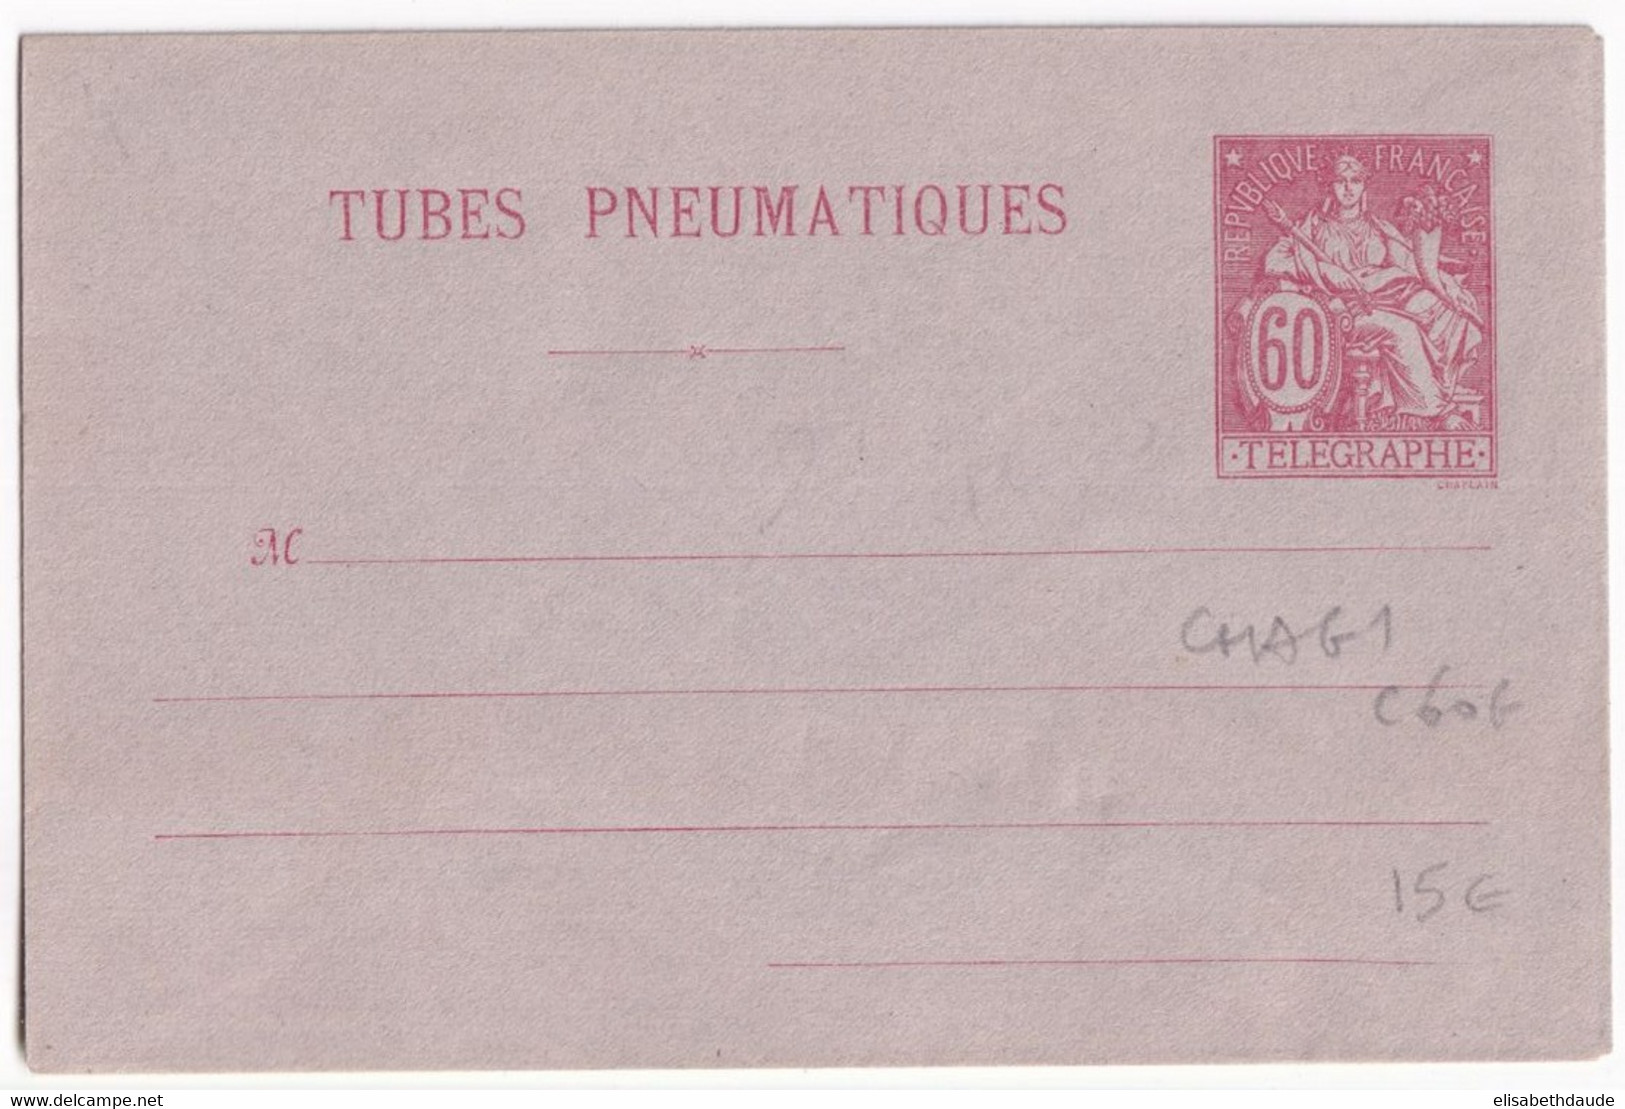 PNEUMATIQUE - 1889 - ENVELOPPE ENTIER POSTAL TYPE CHAPLAIN - STORCH G1 - NEUVE - COTE 2005 = 60 EUR. - Pneumatic Post